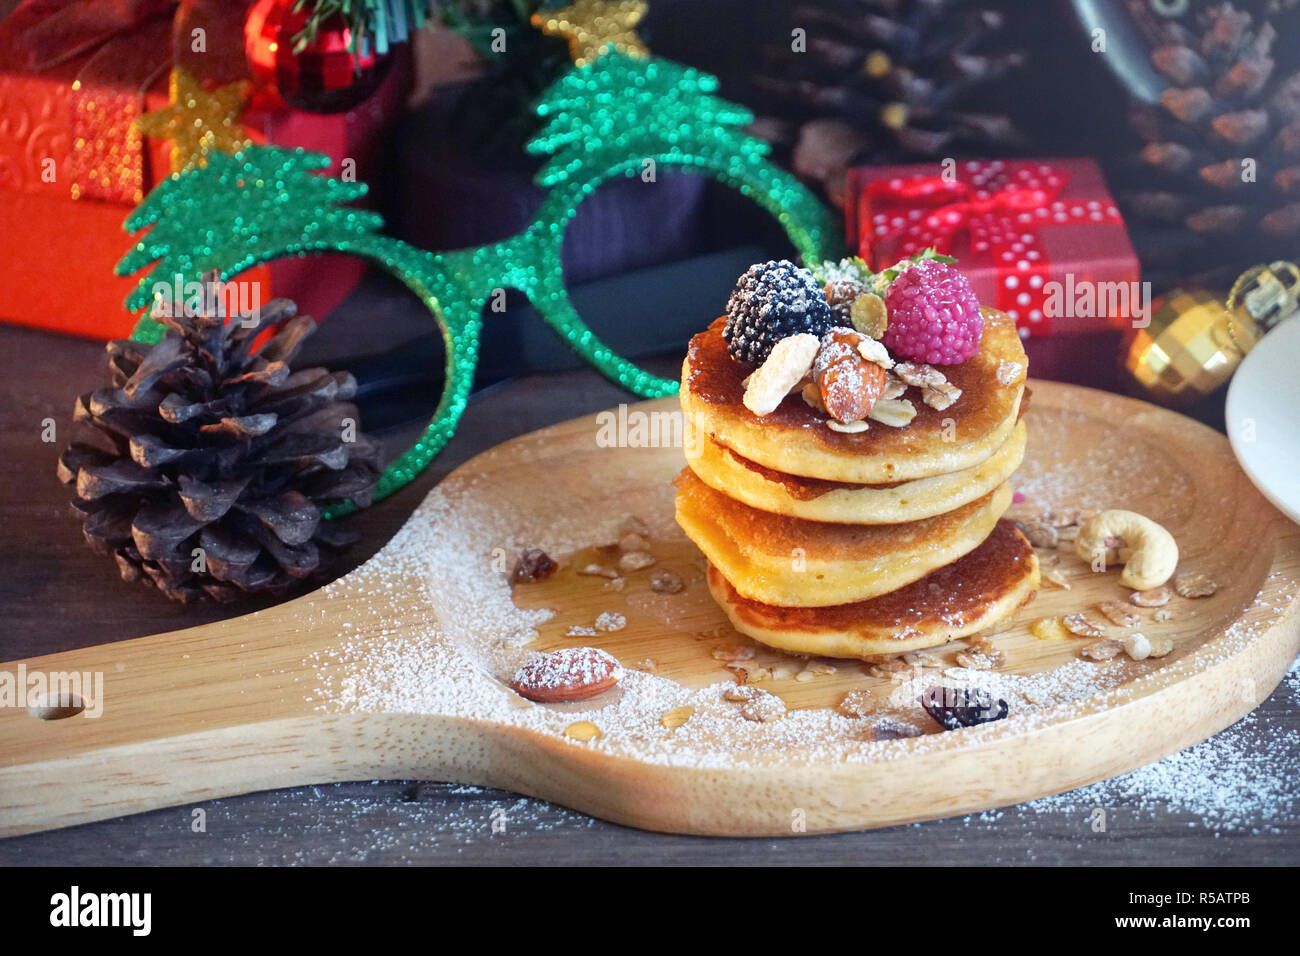 Pfannkuchen mit Beeren und Mutter mit Hintergrund Geschenk und Pine Cone unter Weihnachtsbaum, Holiday Party Dessert. Pfannkuchen mit Beeren und n Stockfoto